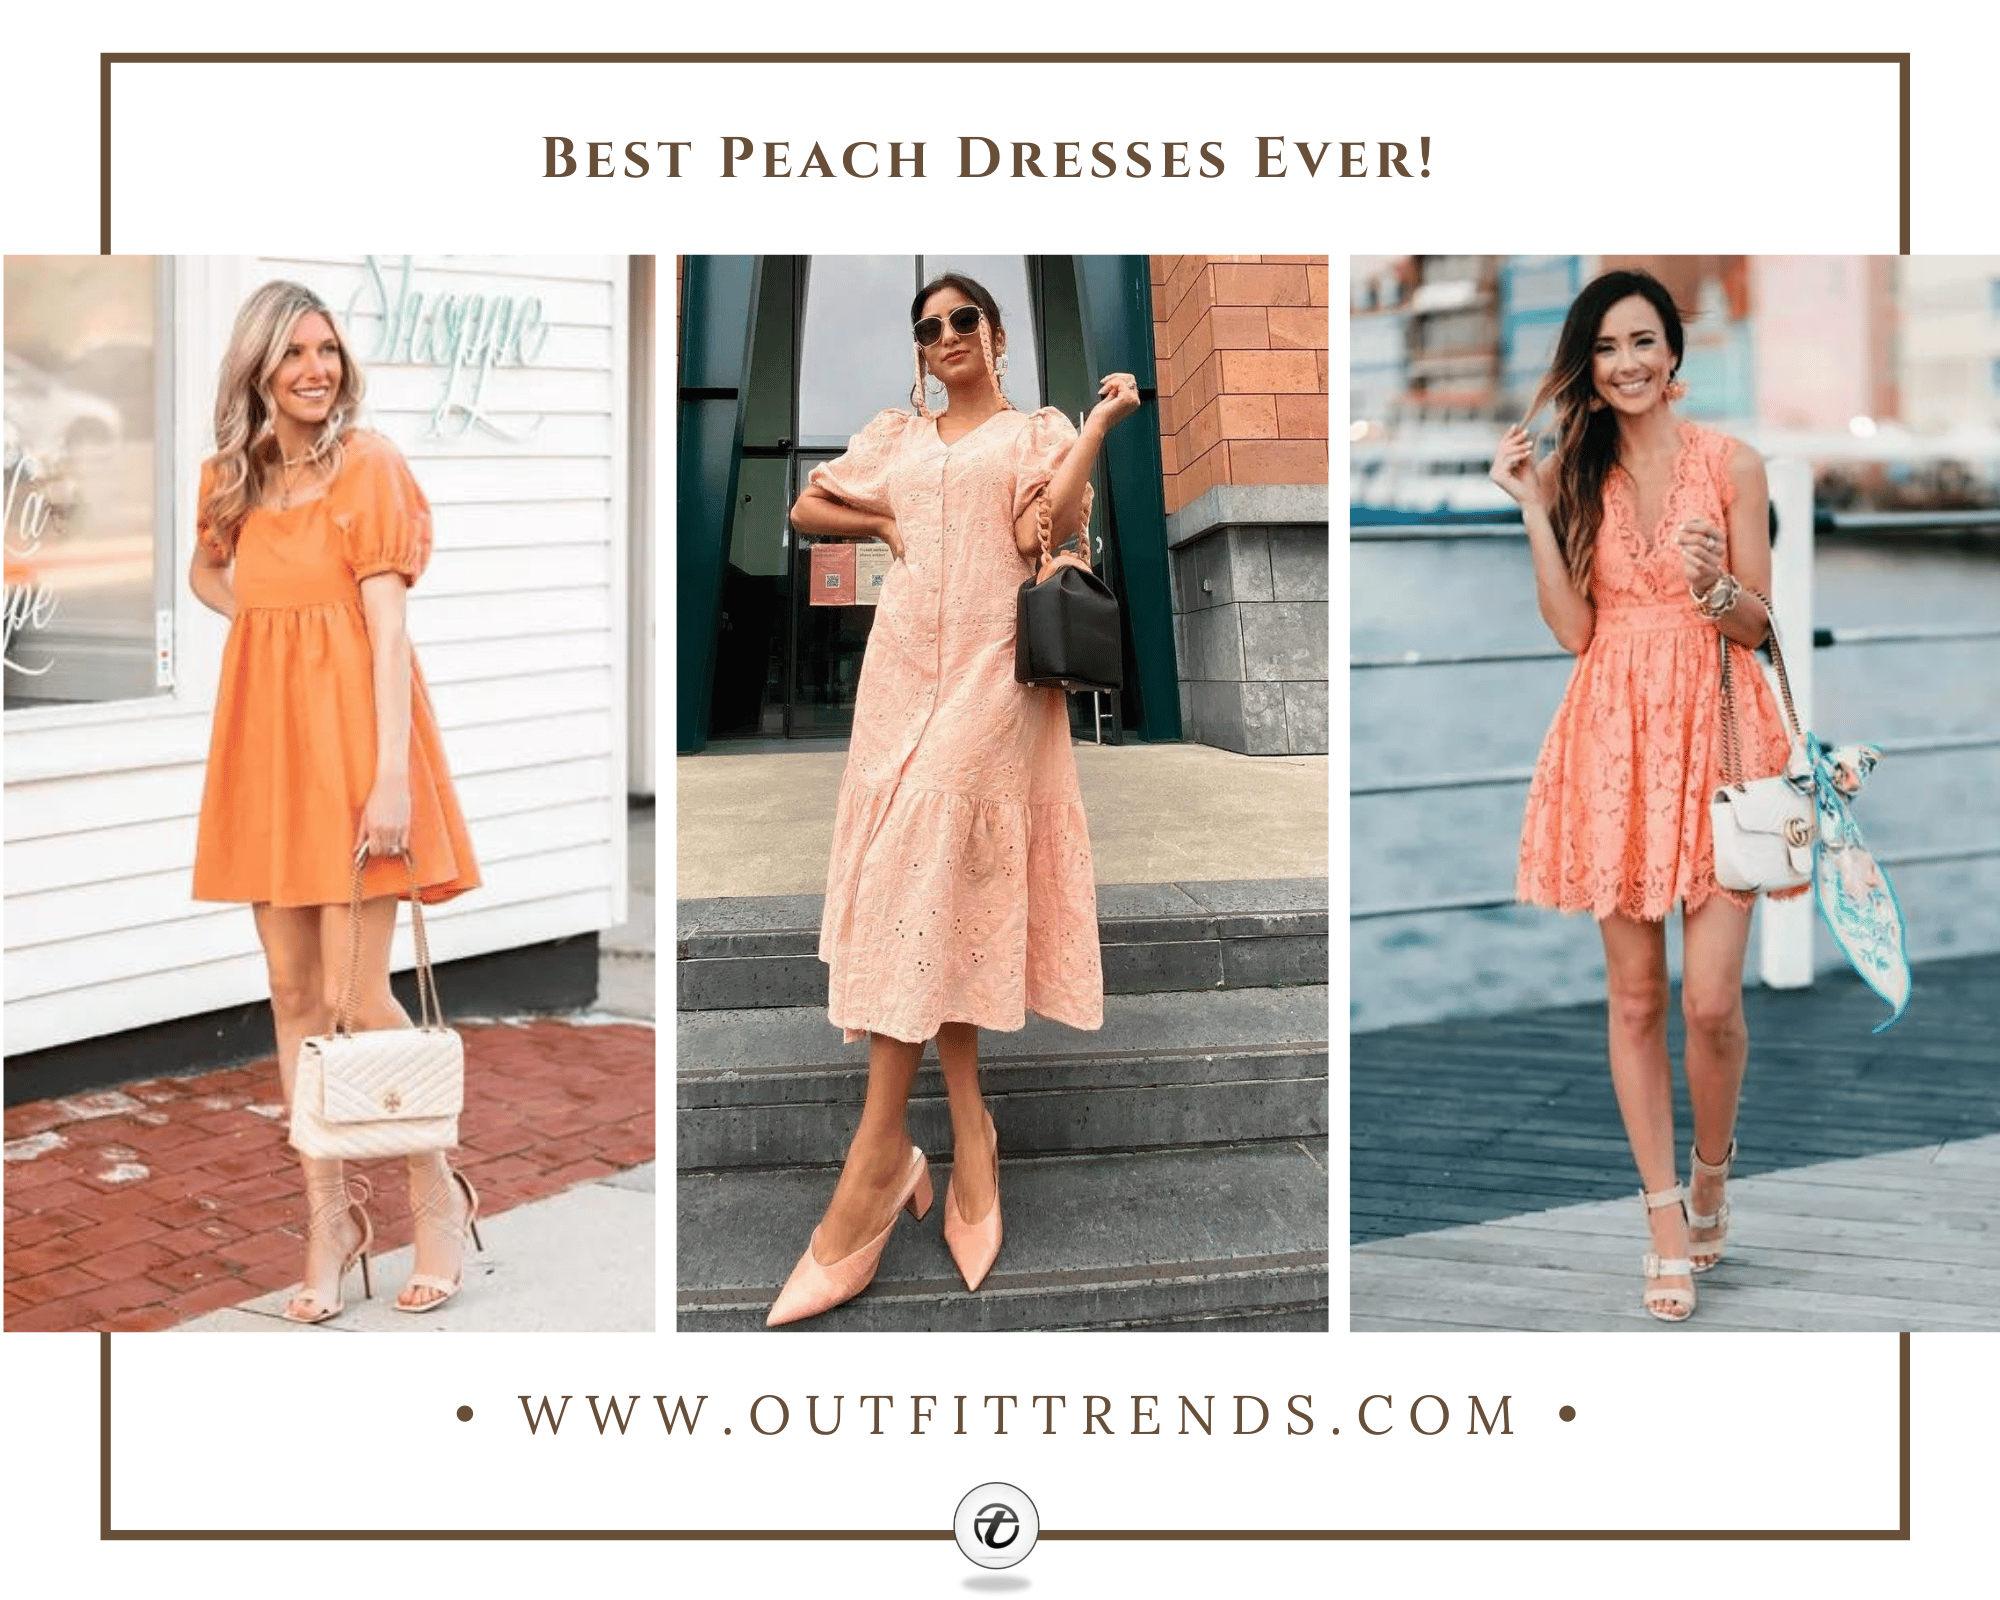 Peach Dress What Color Shoes | vlr.eng.br